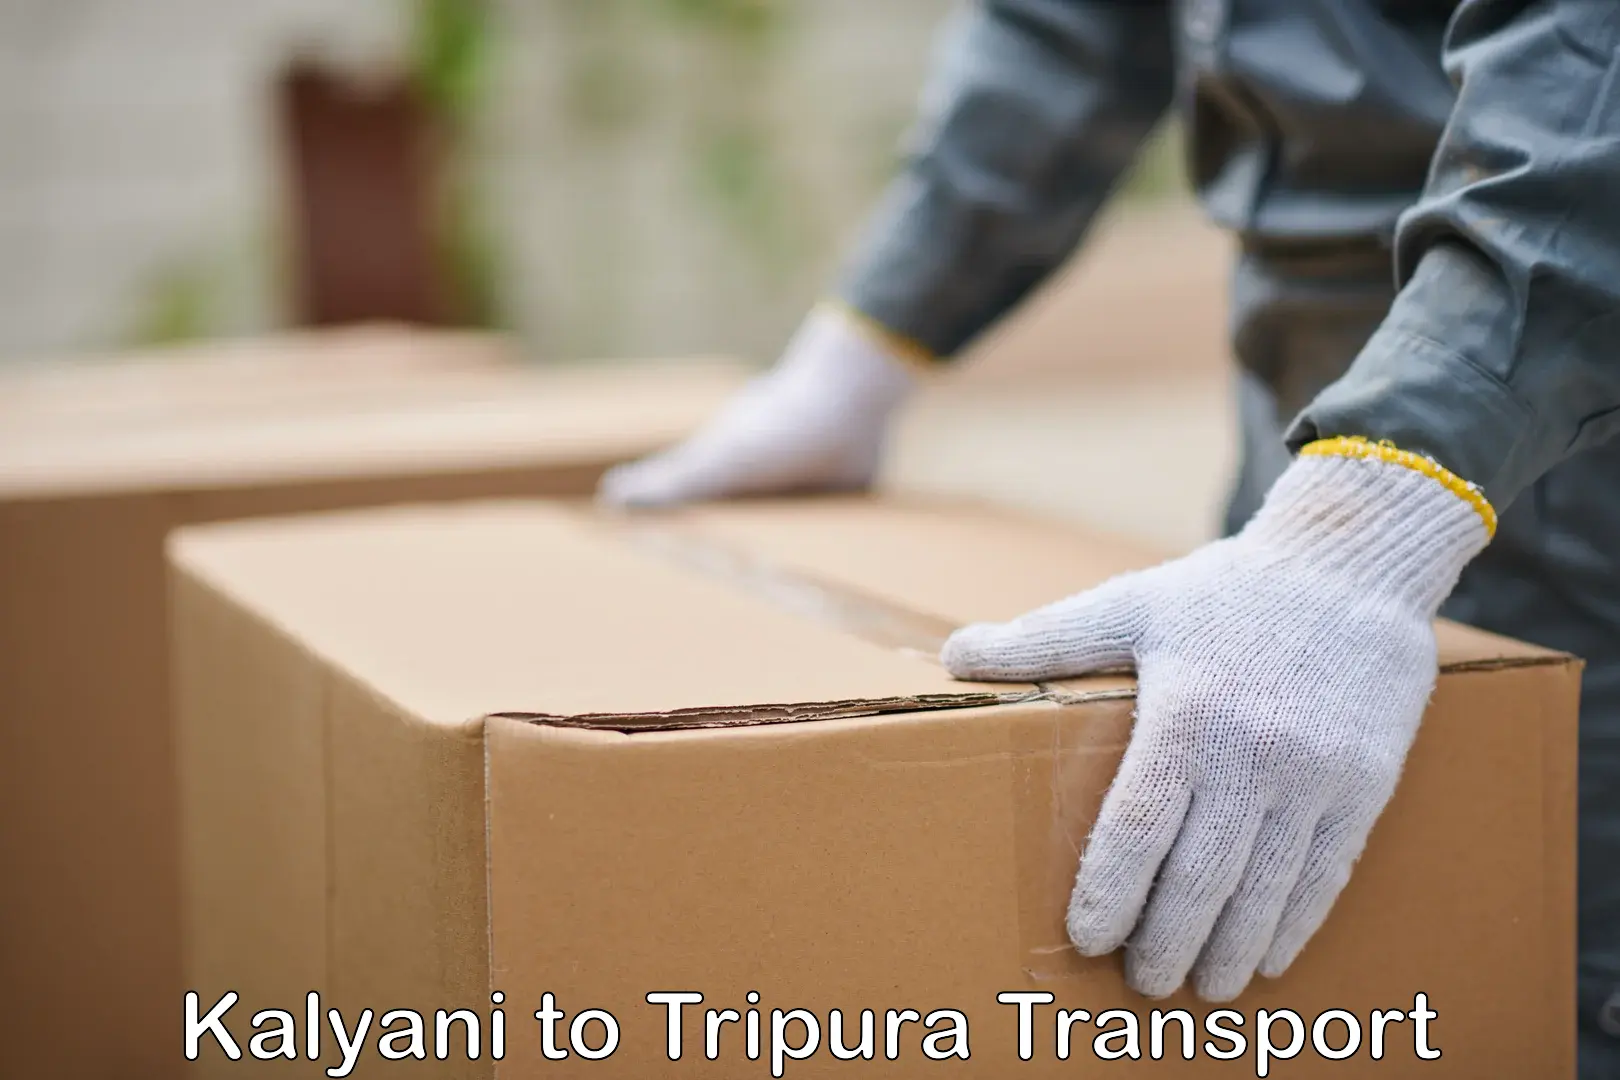 Container transport service Kalyani to Dhalai